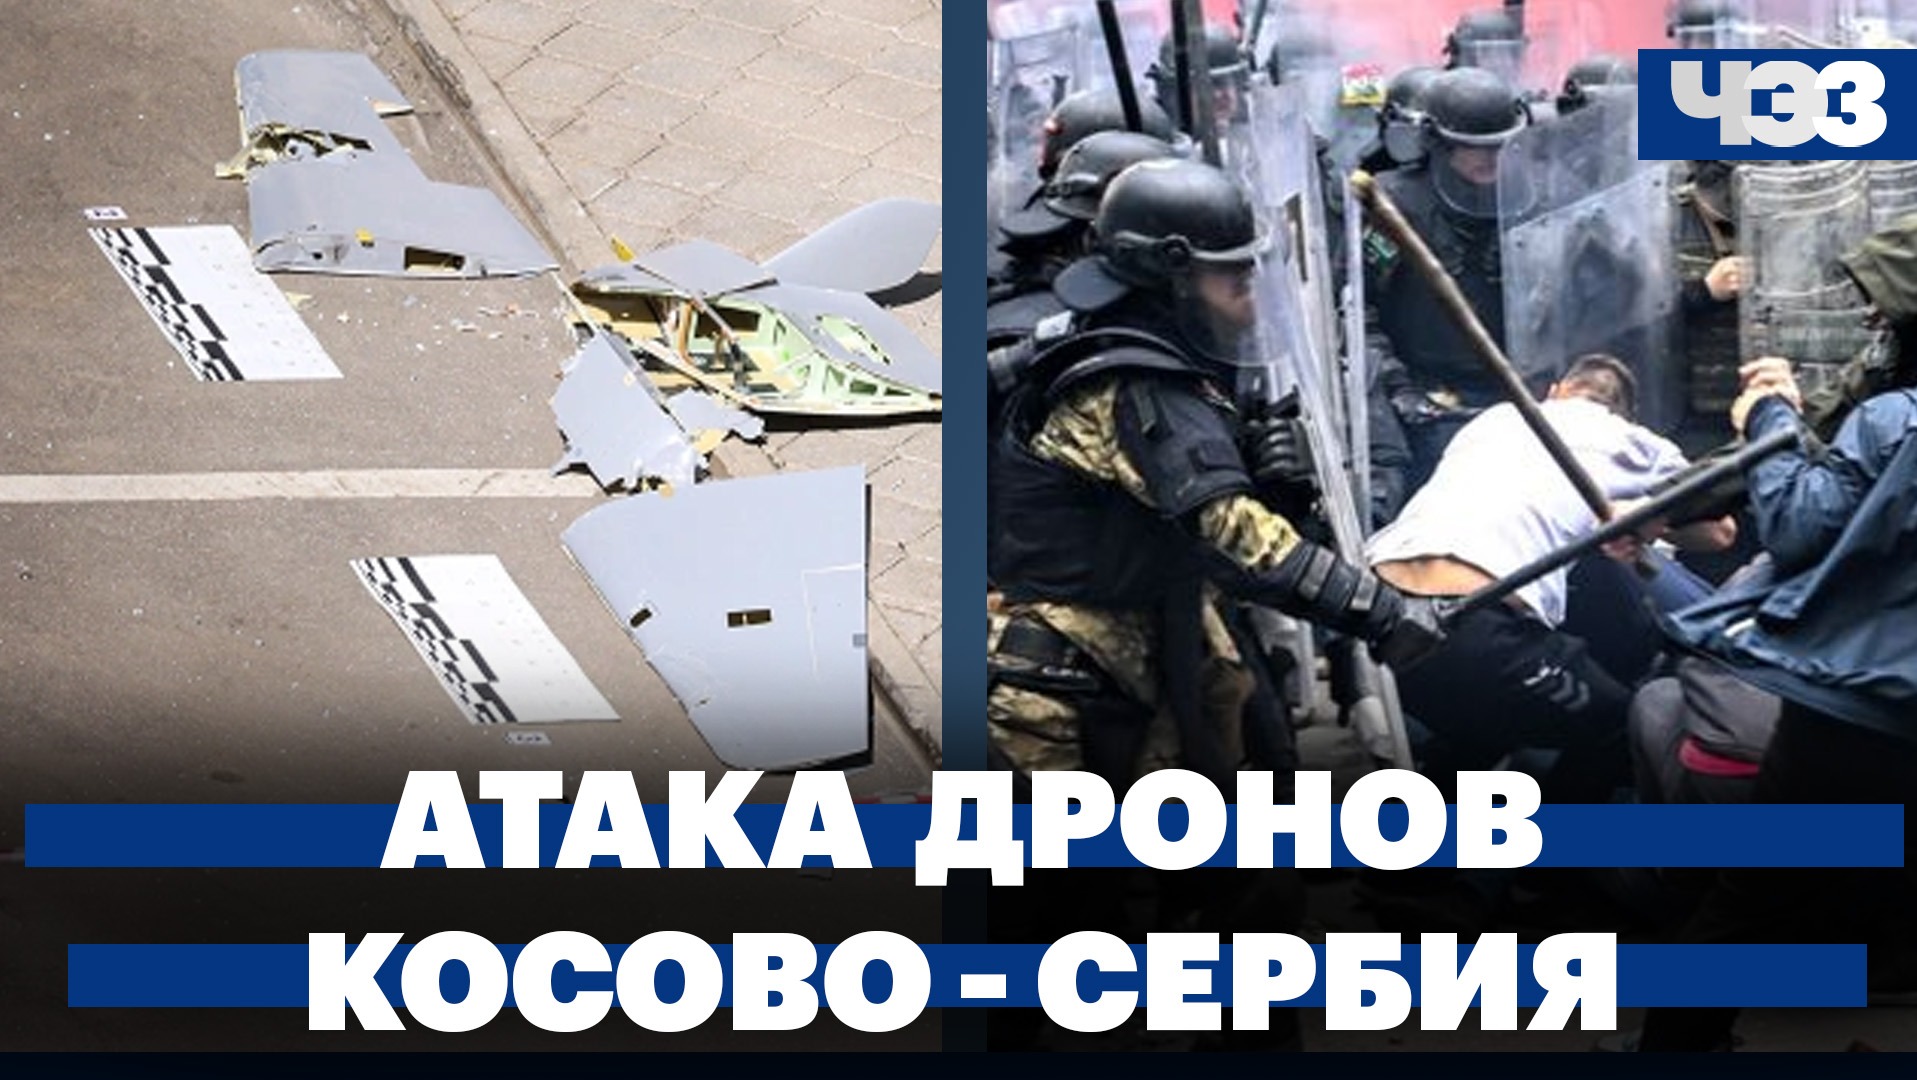 Атака дронов на Москву и Подмосковье. Конфликт Косово - Сербия: обстановка в регионе